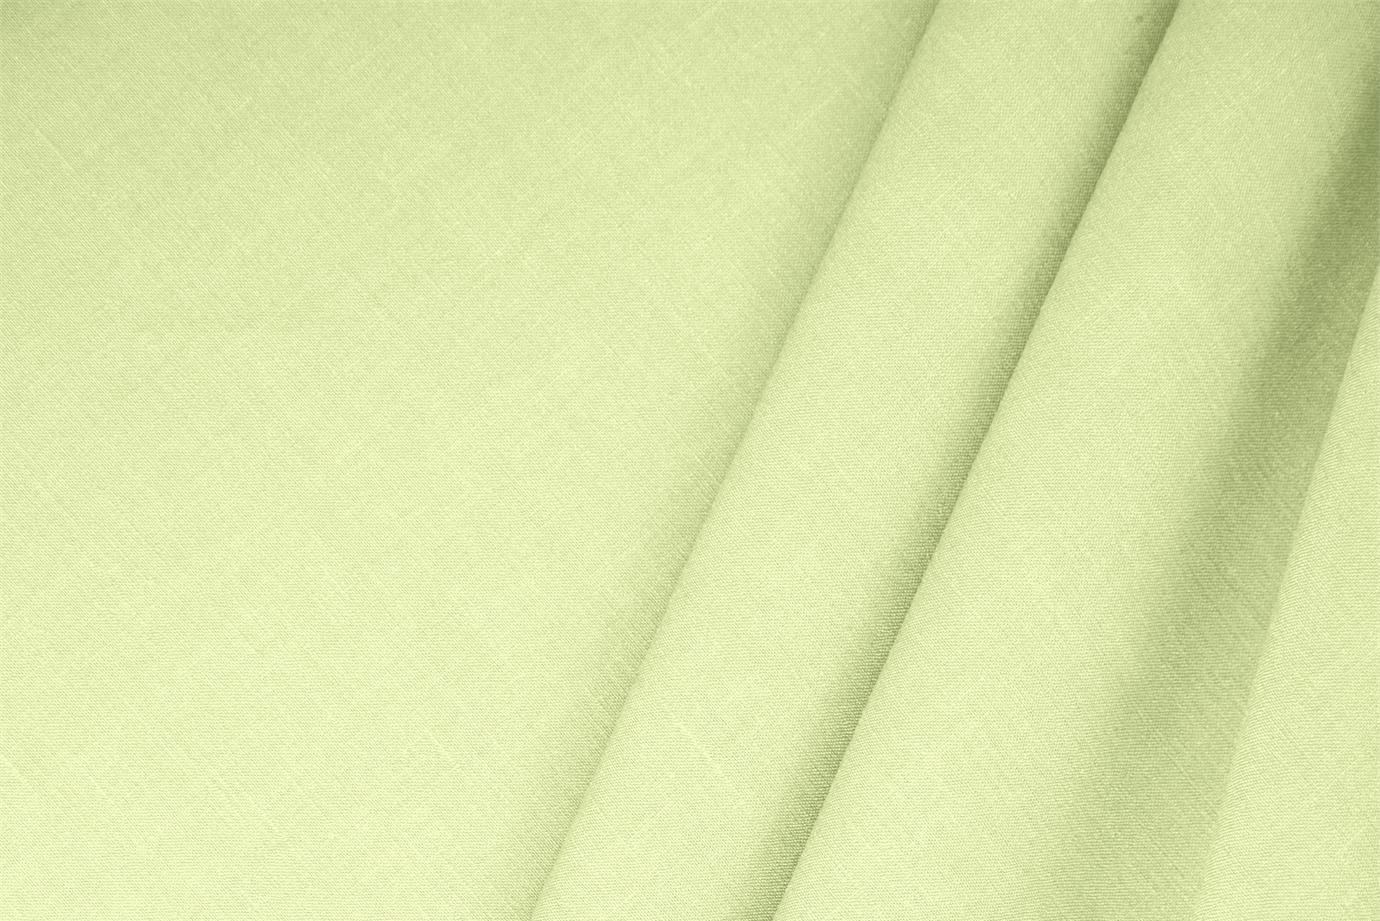 Apple Green Linen, Stretch, Viscose Linen Blend fabric for dressmaking